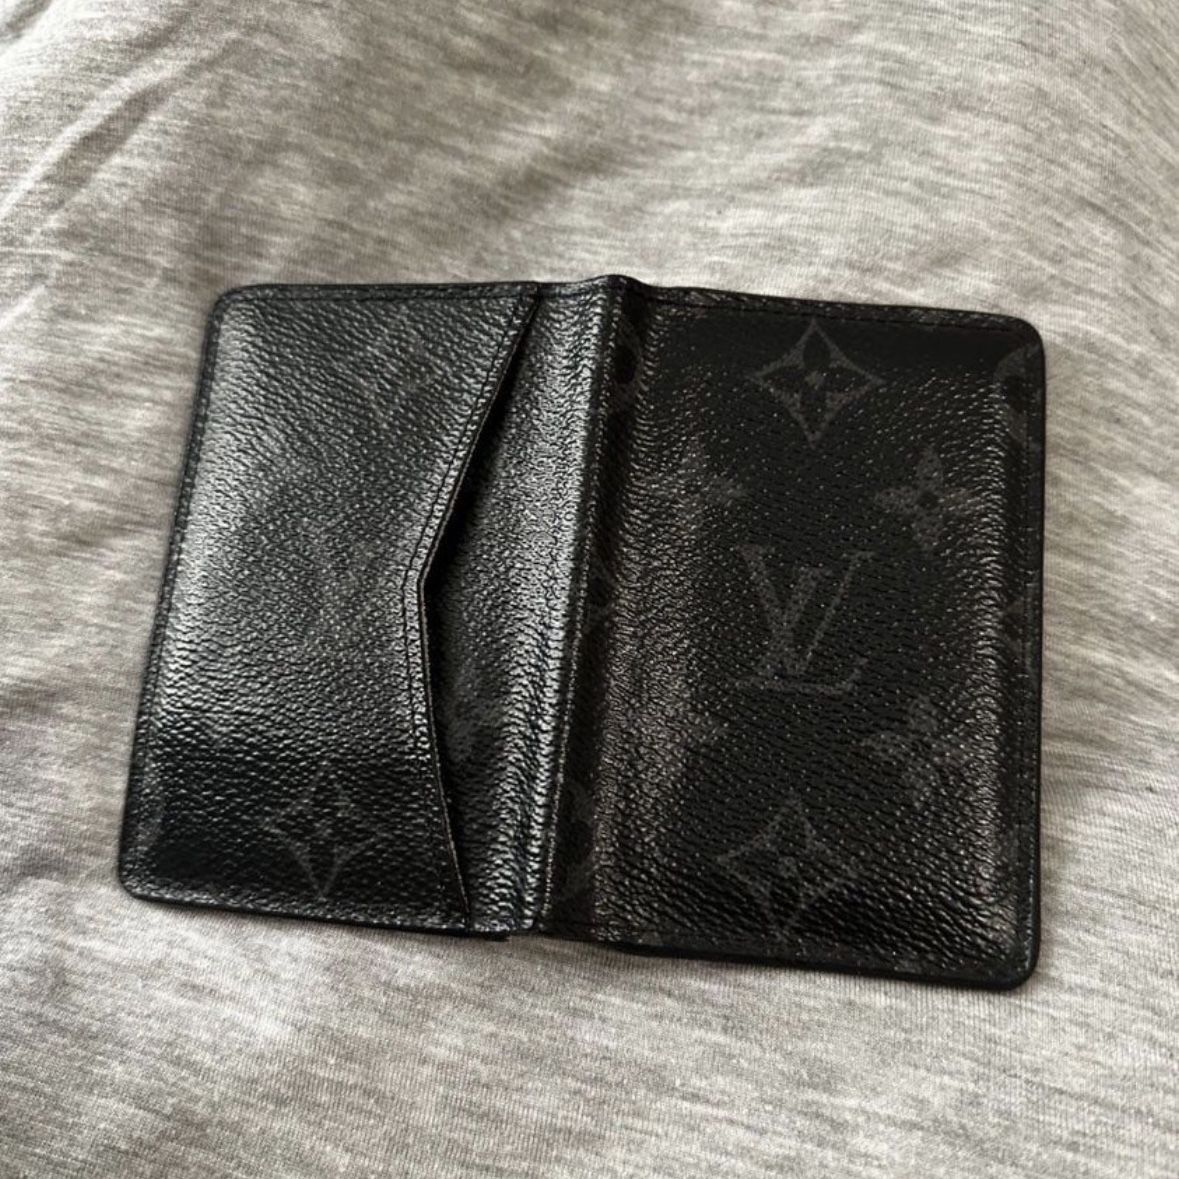 Louis Vuitton - Red Sunset Monogram Pocket Organizer Wallet – eluXive